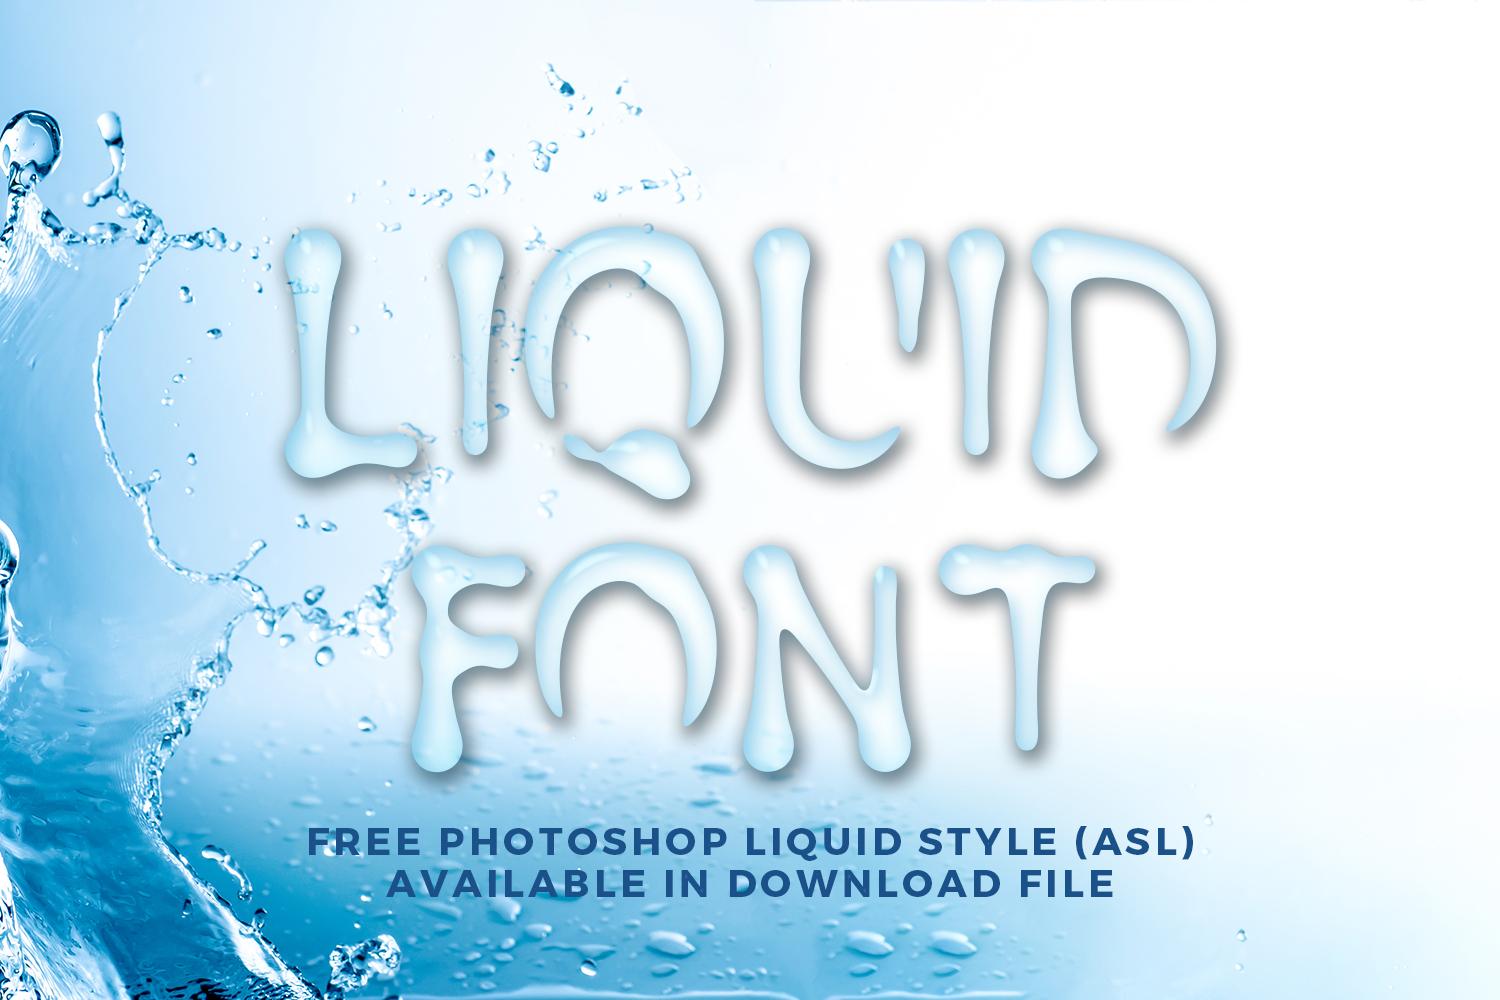 Liquid Font